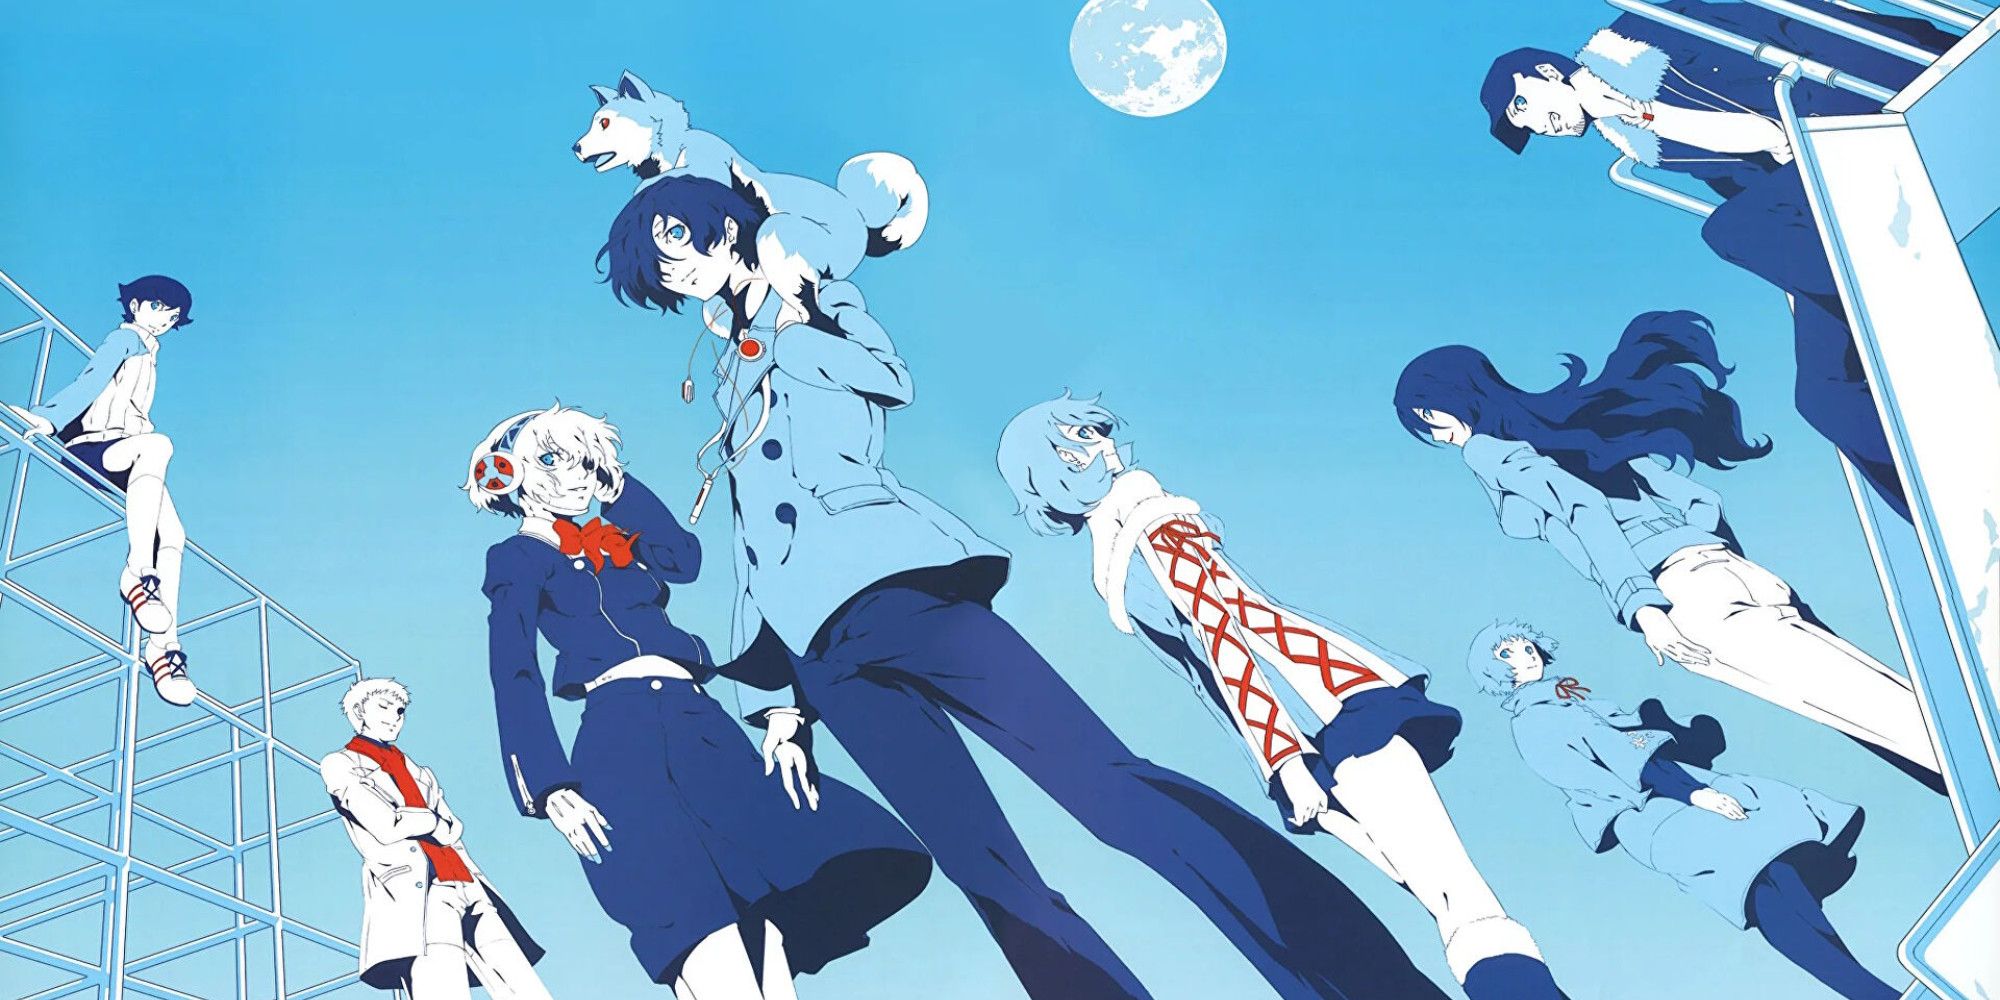 Persona 3 cast on a stylized blue background